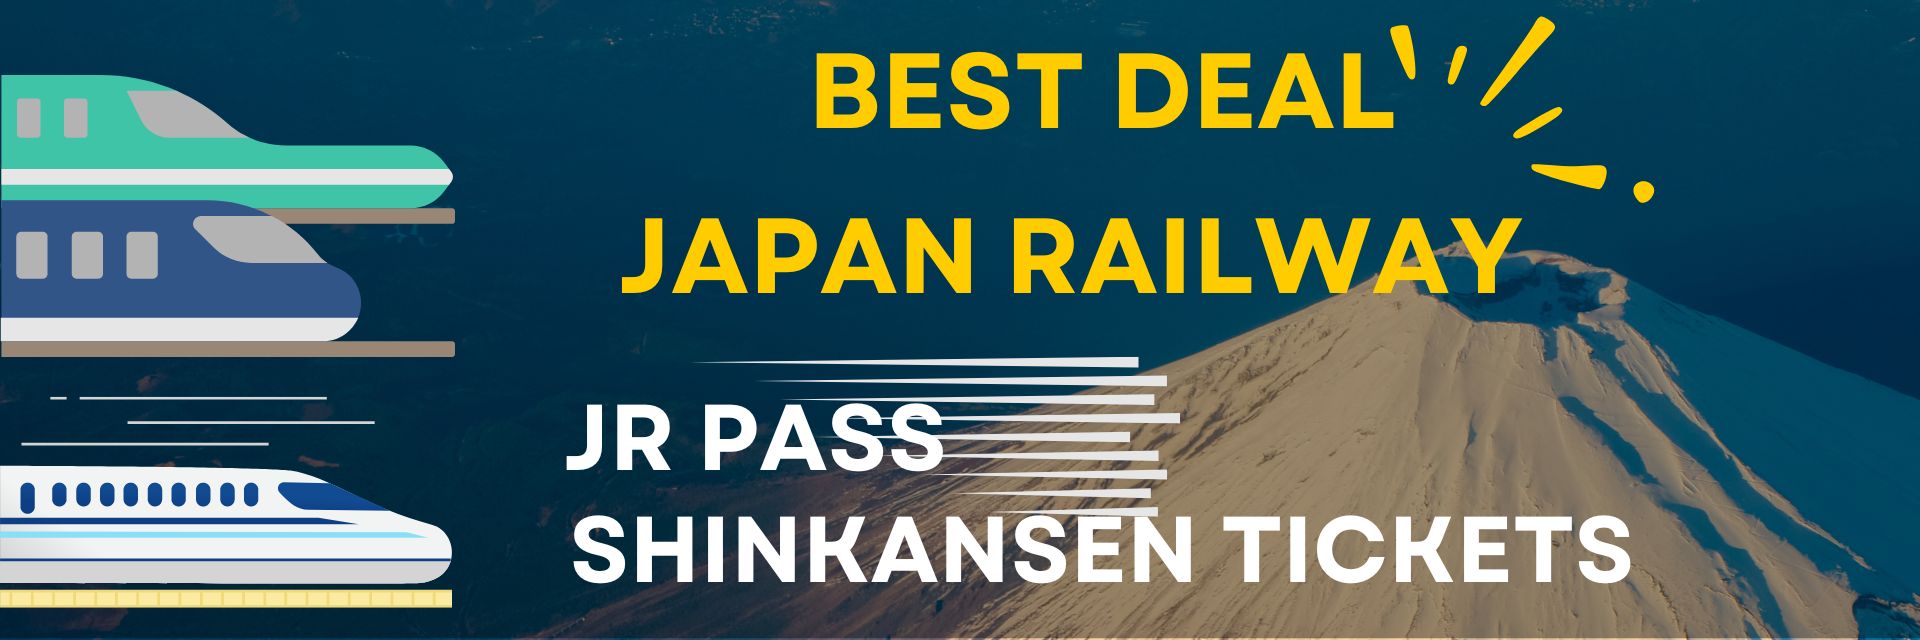 Japan Shinkansen ticket